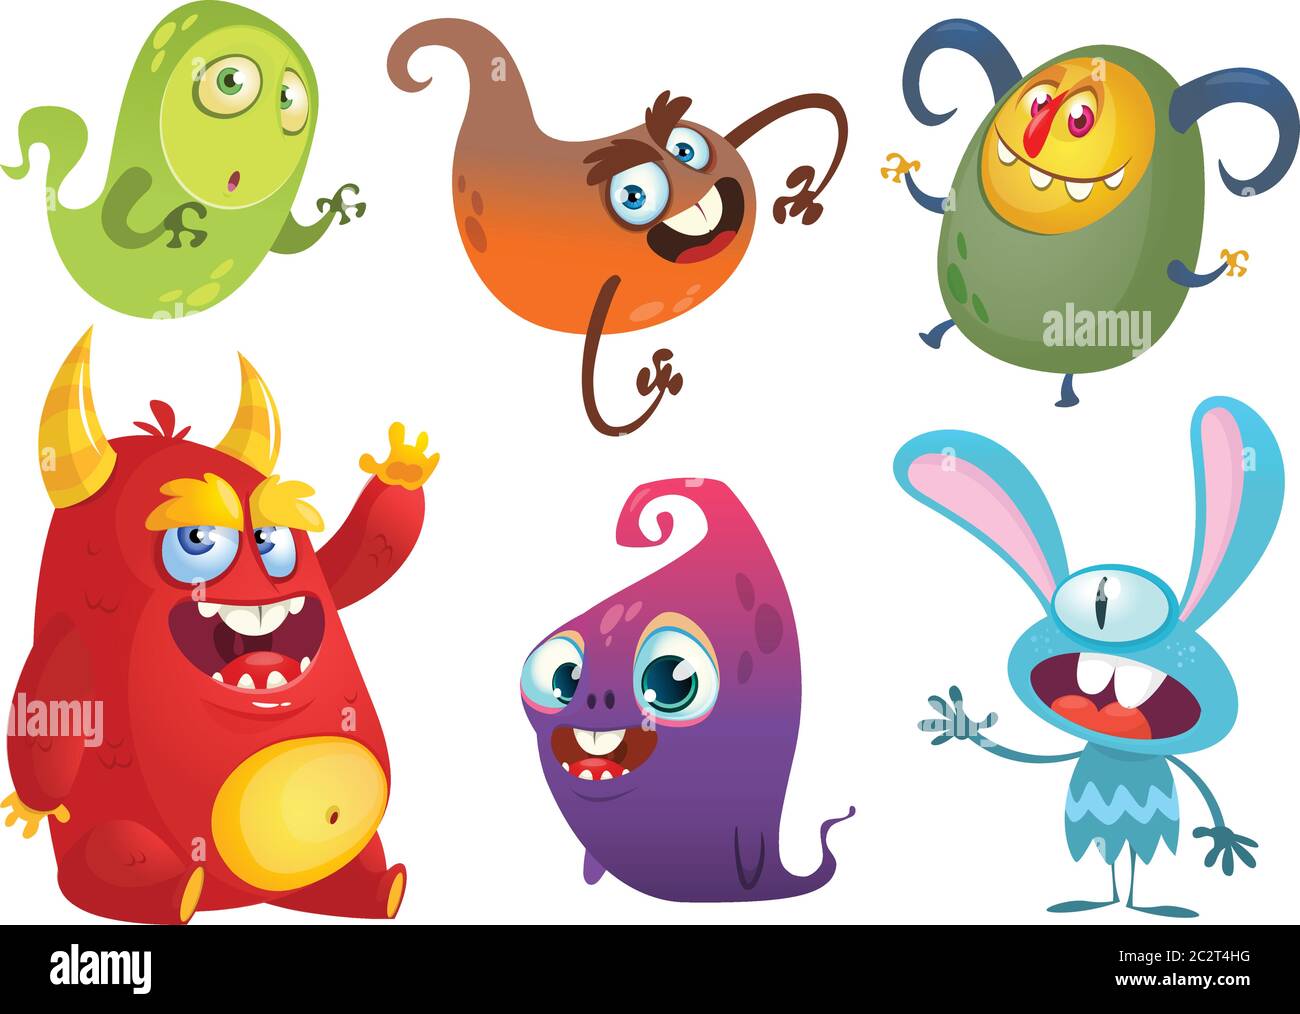 Funny cartoon monsters set. Halloween design Stock Vector